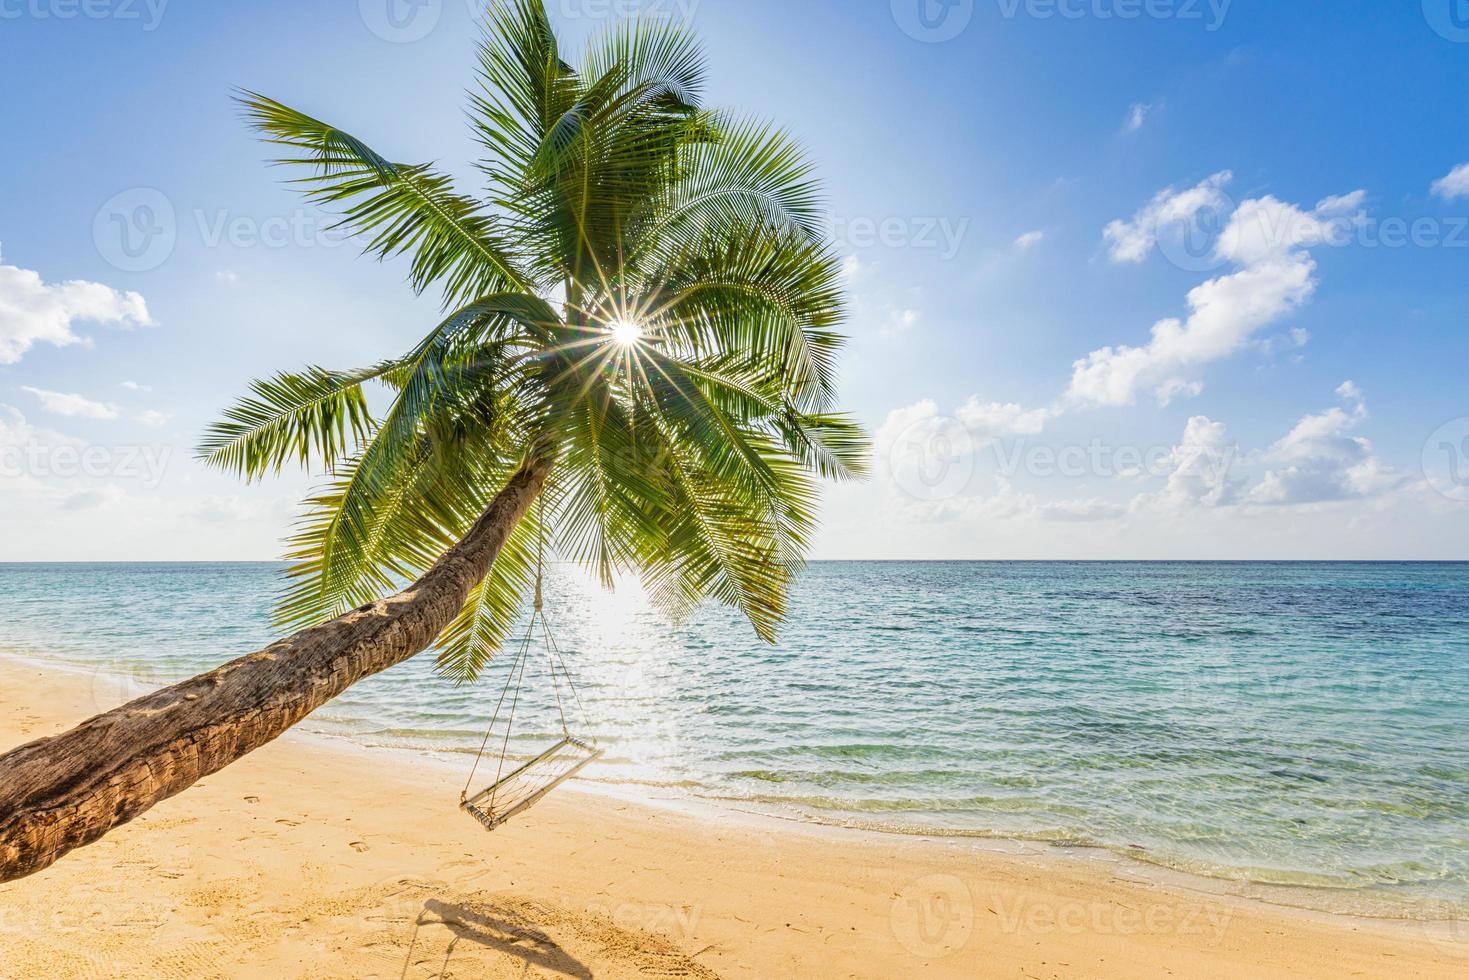 tropischer strandhintergrund als sommerlandschaft entspannen. friedliche Schaukel hängt an Palme über Sand und ruhige Meeressonnenstrahlen für Strandschablone. freiheit sorglose küste, exotischer sonniger himmel, horizont lagunenbucht foto